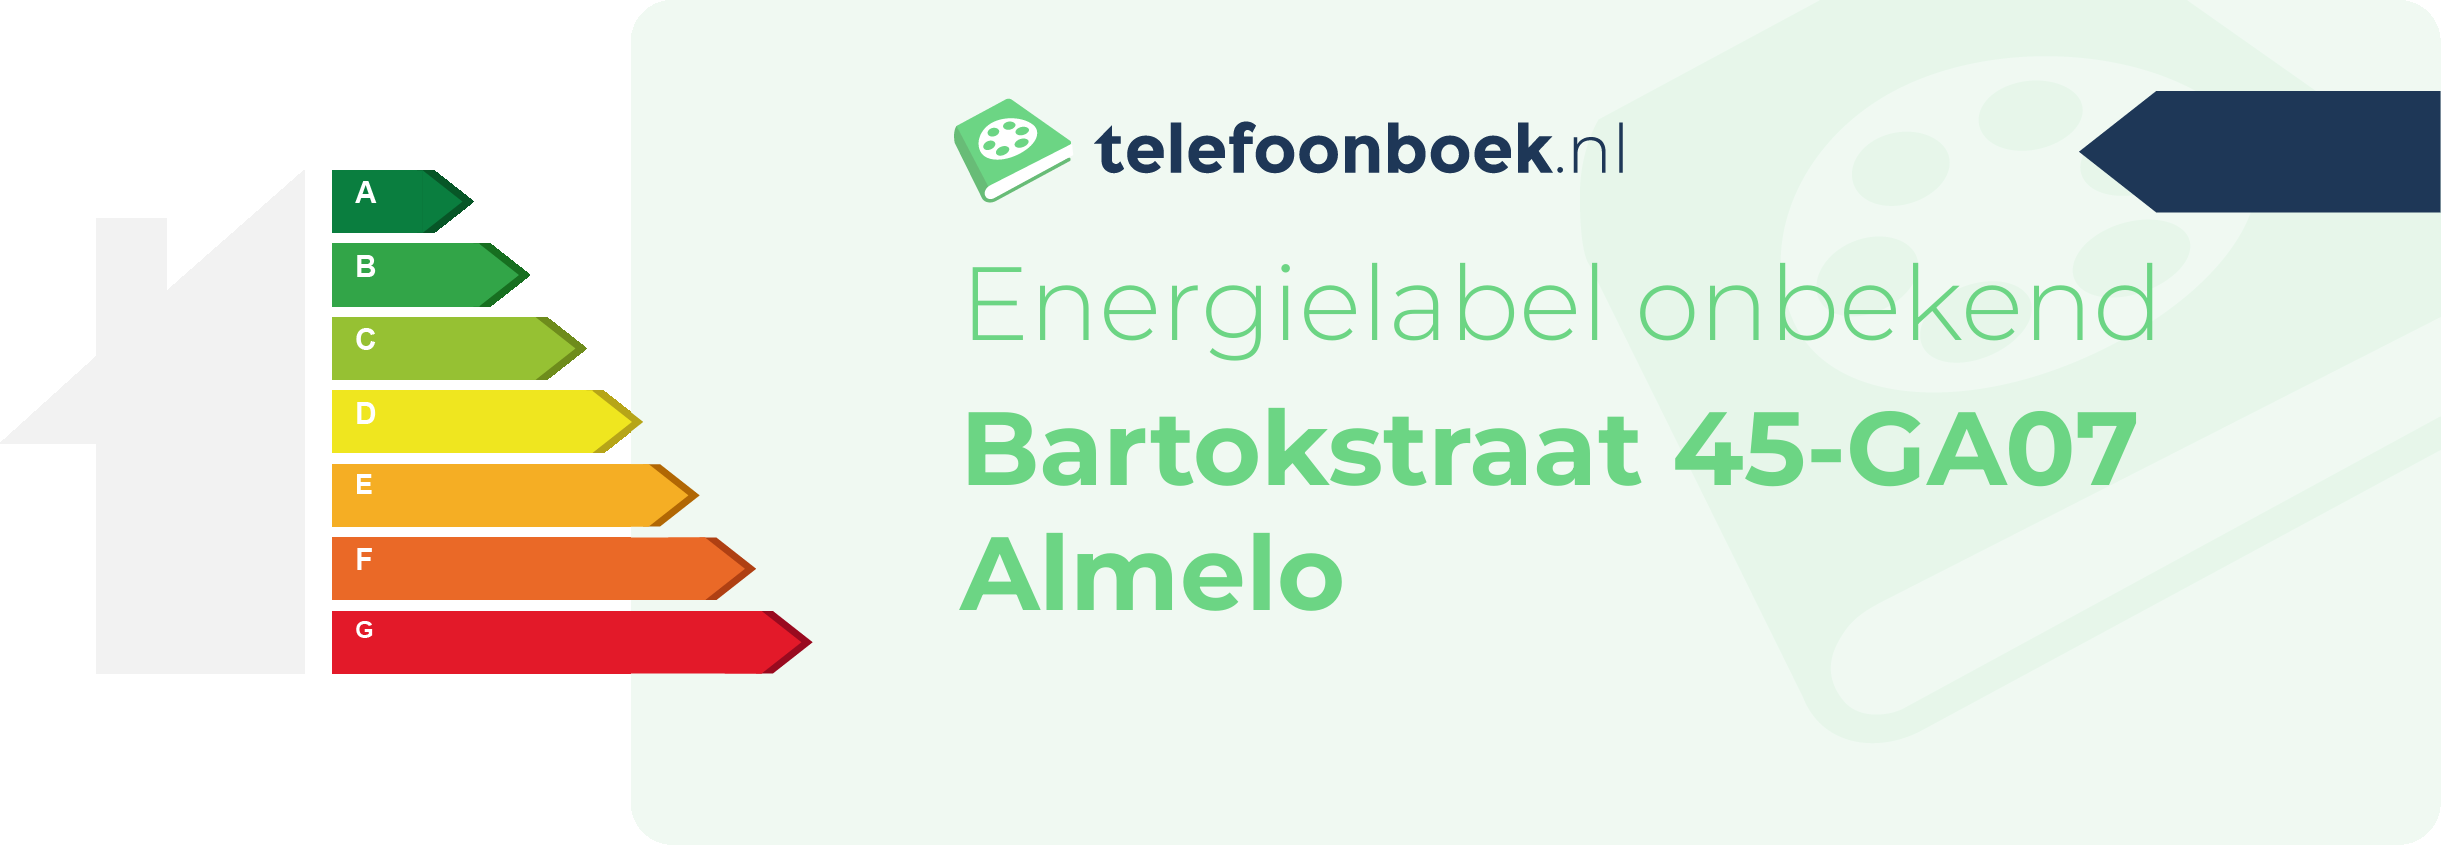 Energielabel Bartokstraat 45-GA07 Almelo